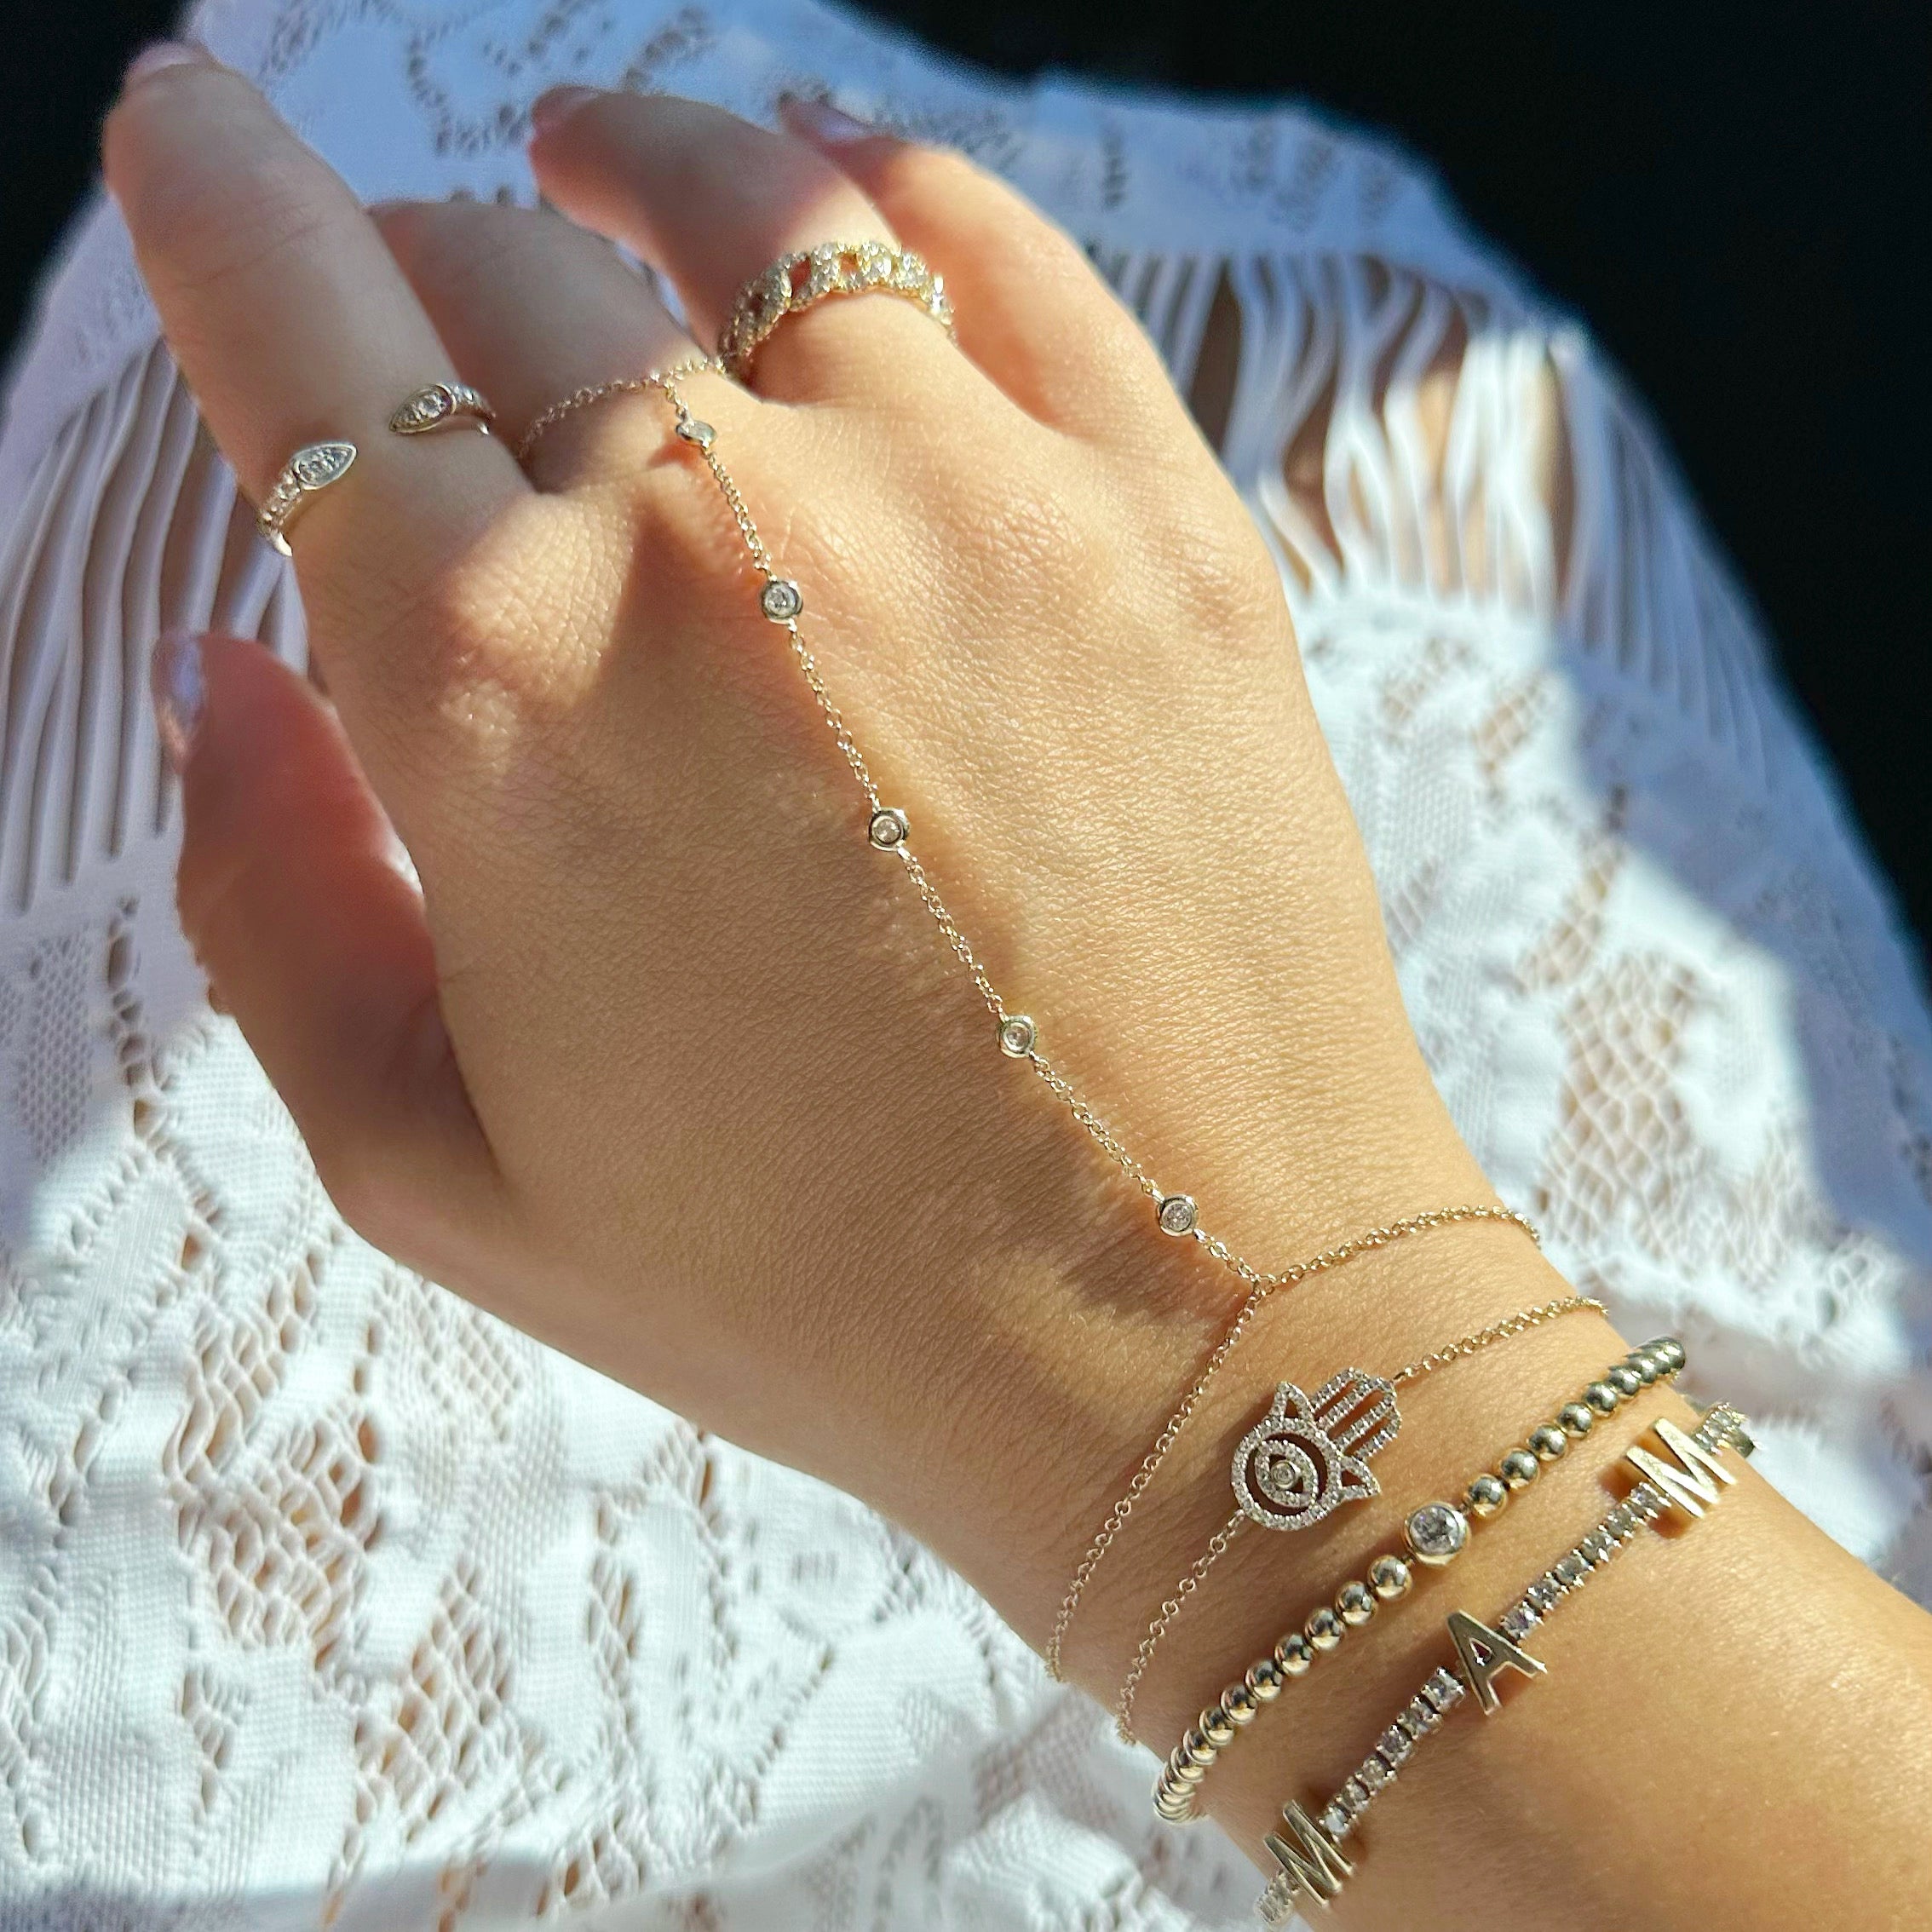 14K Gold Diamond Bezel Station Hand Chain - Body Jewelry - Izakov Diamonds + Fine Jewelry